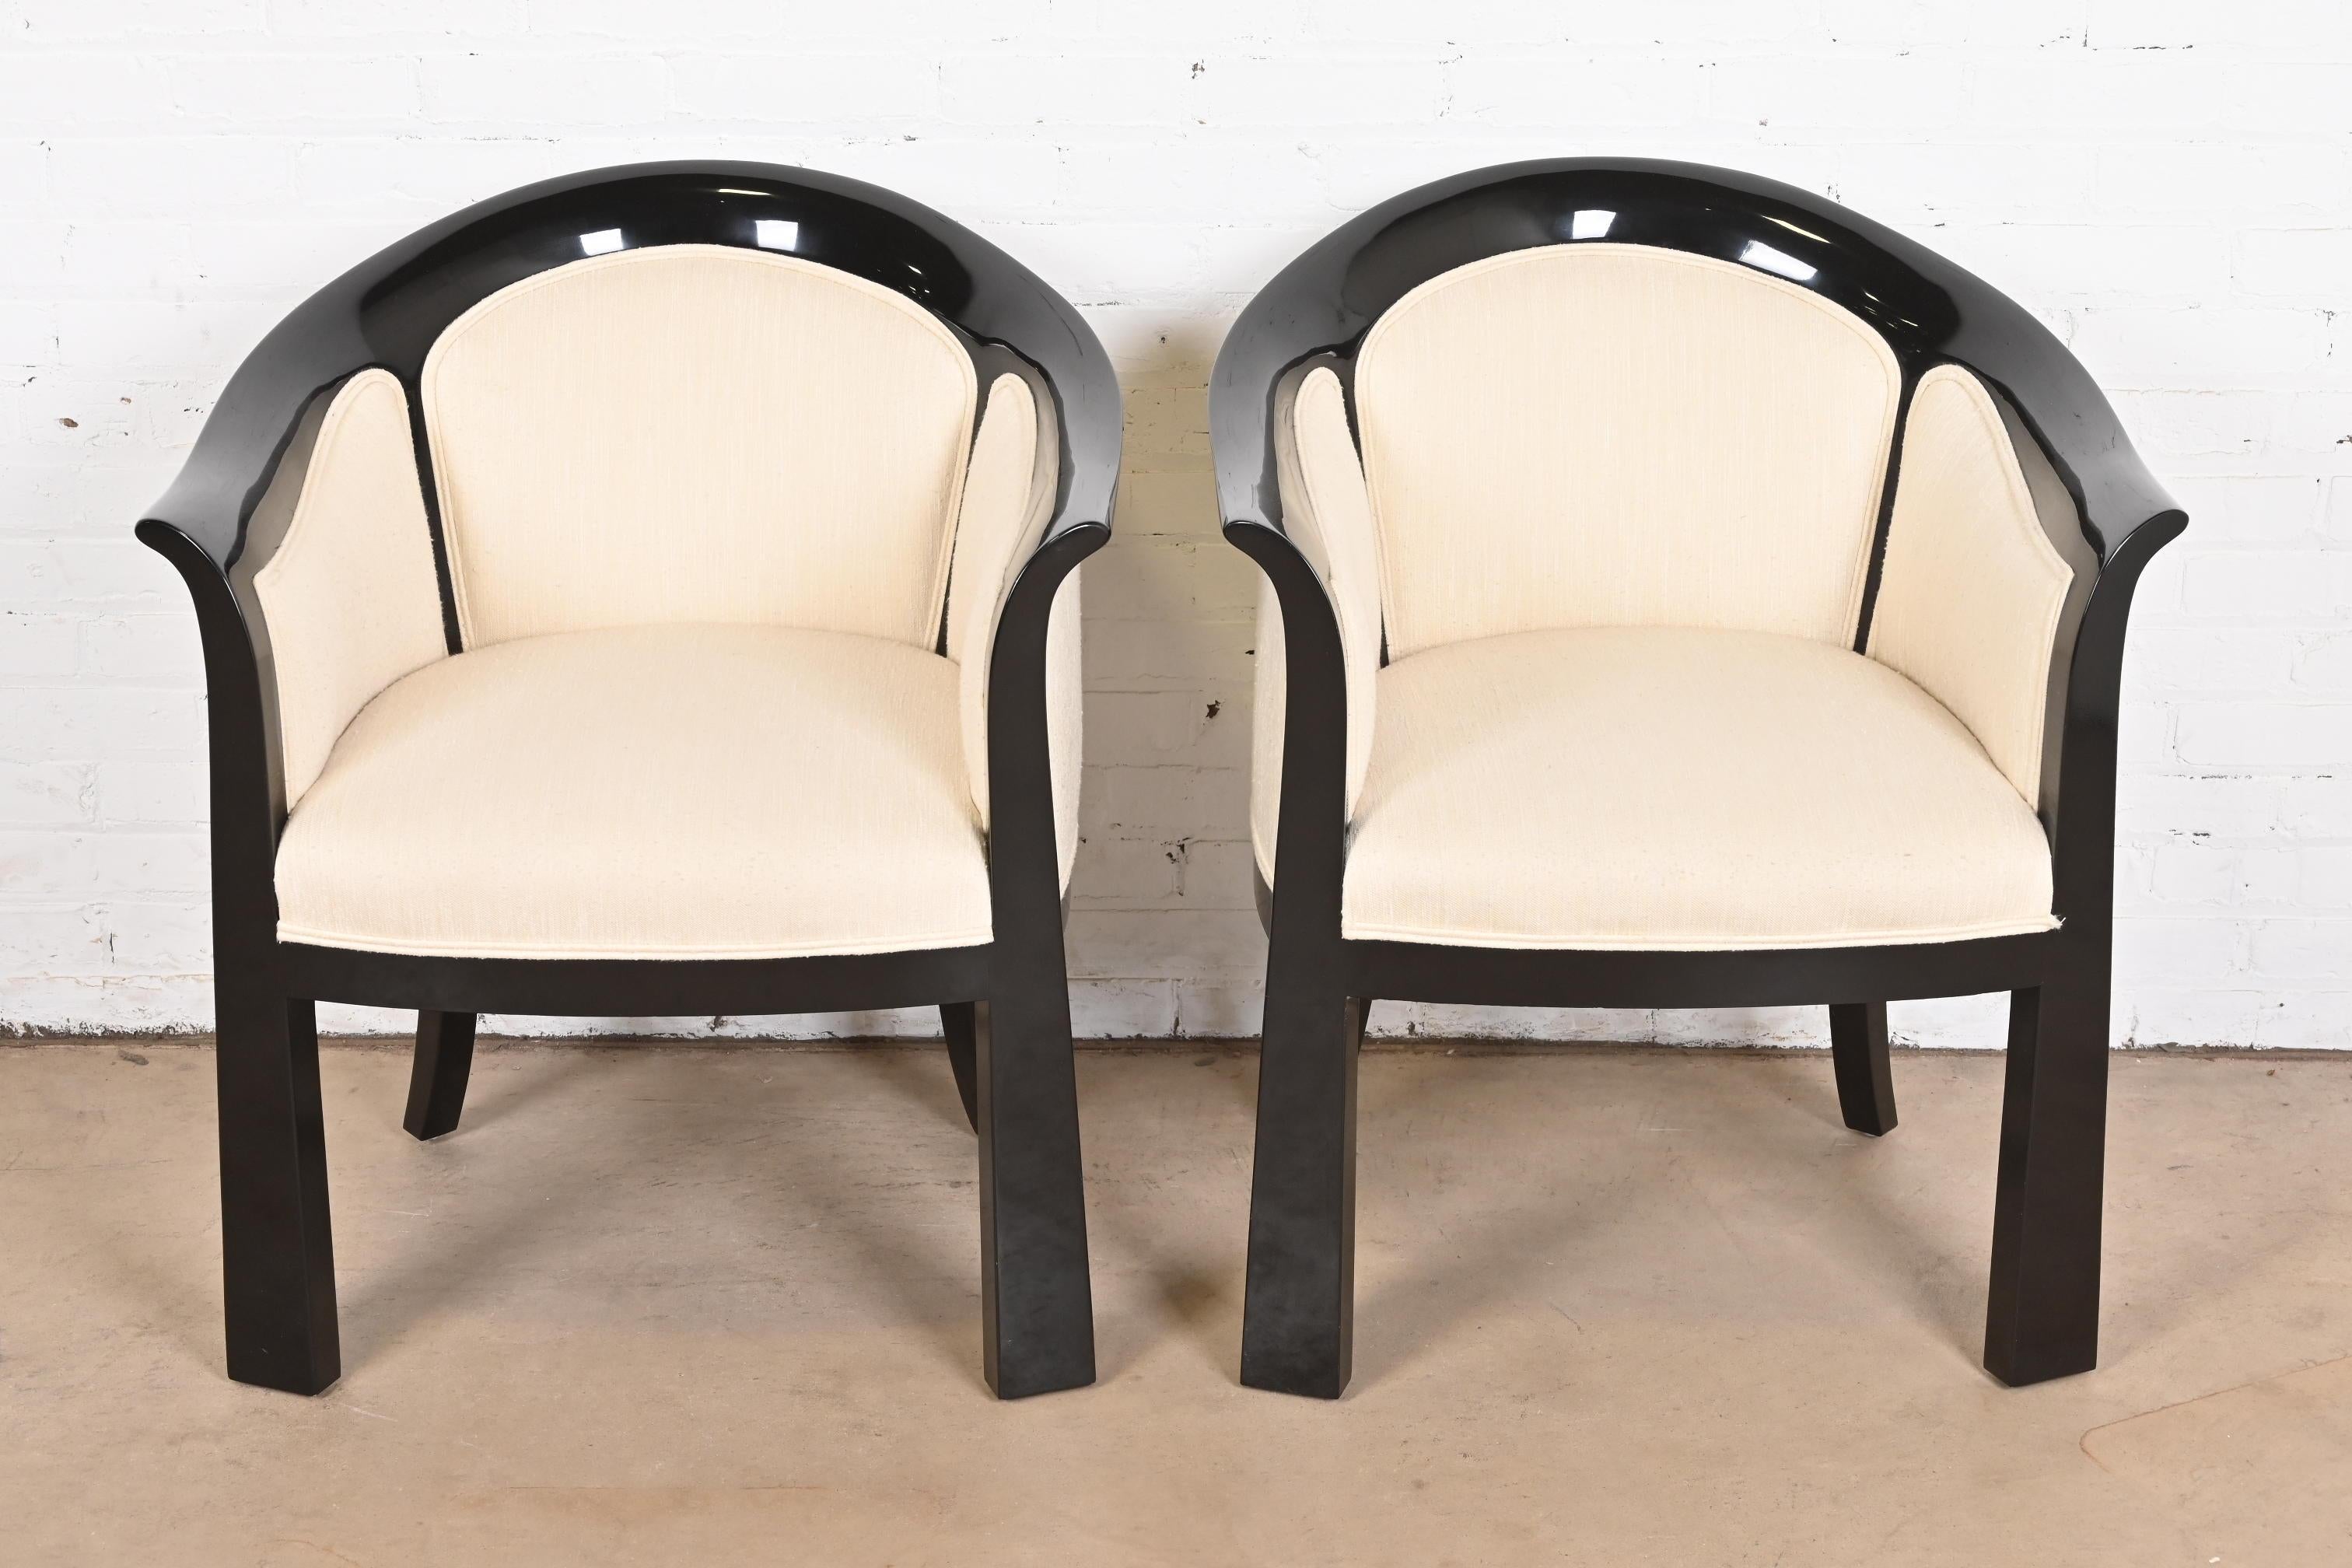 Américain Interior Crafts Modernity Art Deco Paire de chaises baignoires laquées noires